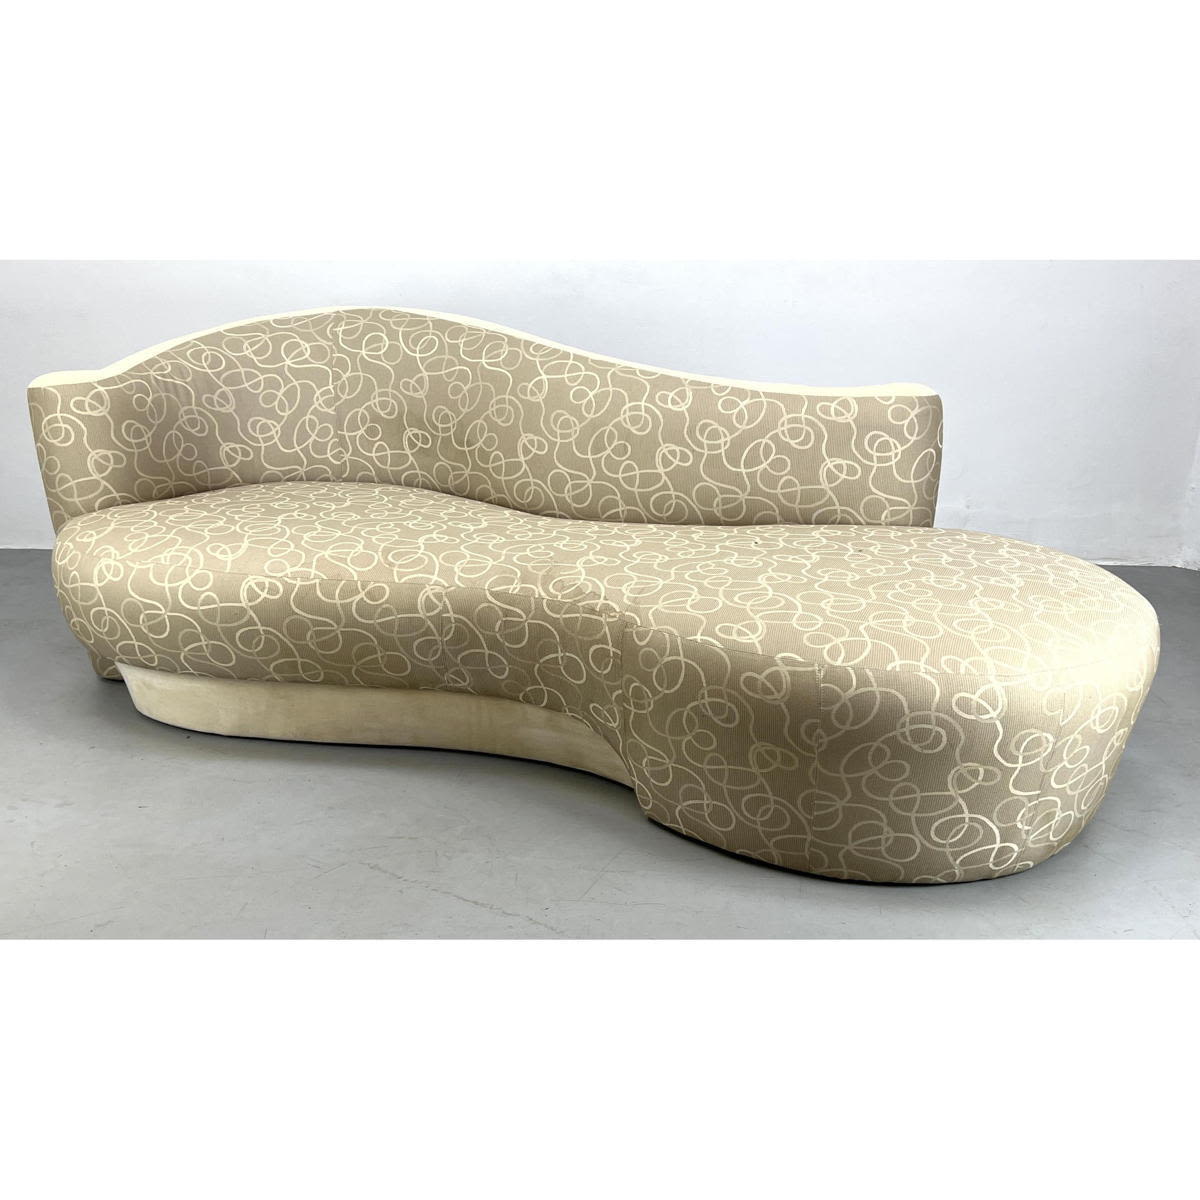 Weiman Kagan style serpentine sofa